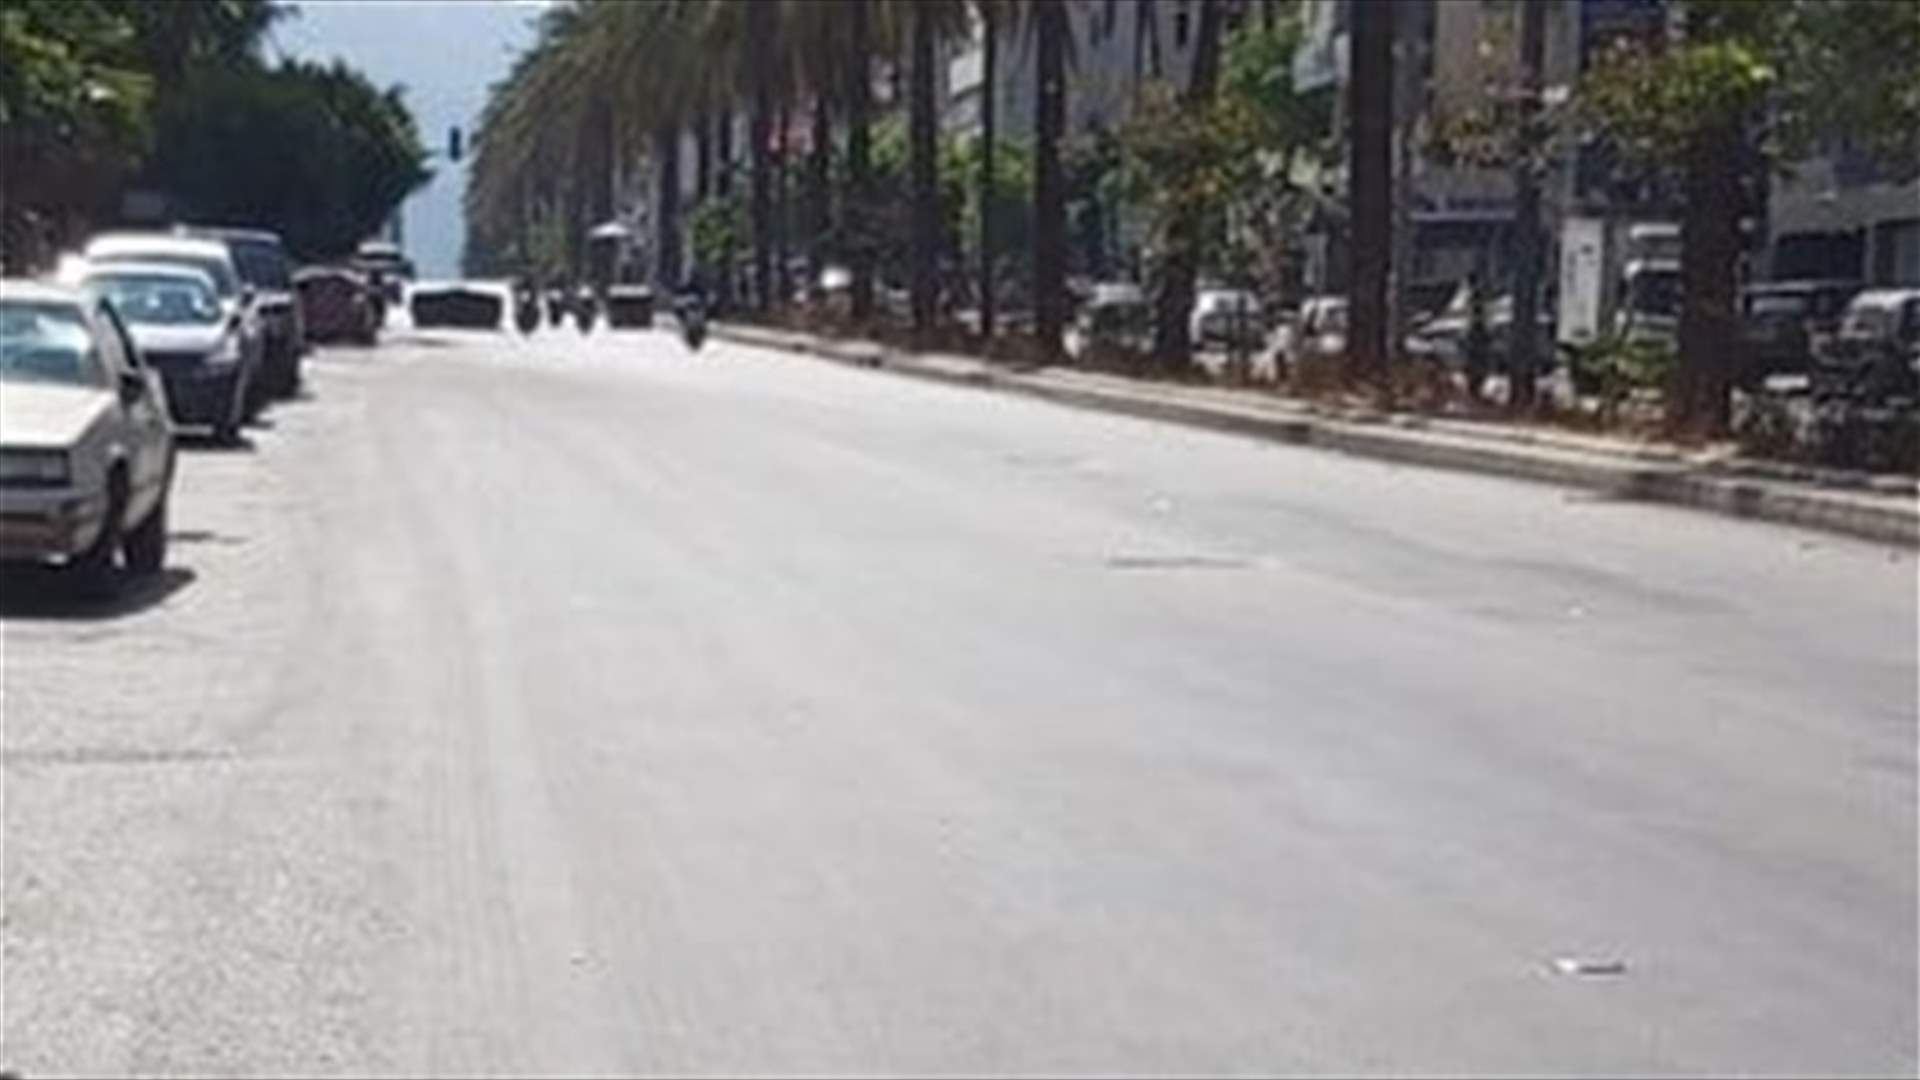 General strike cuts off roads across Lebanon-[VIDEOS]